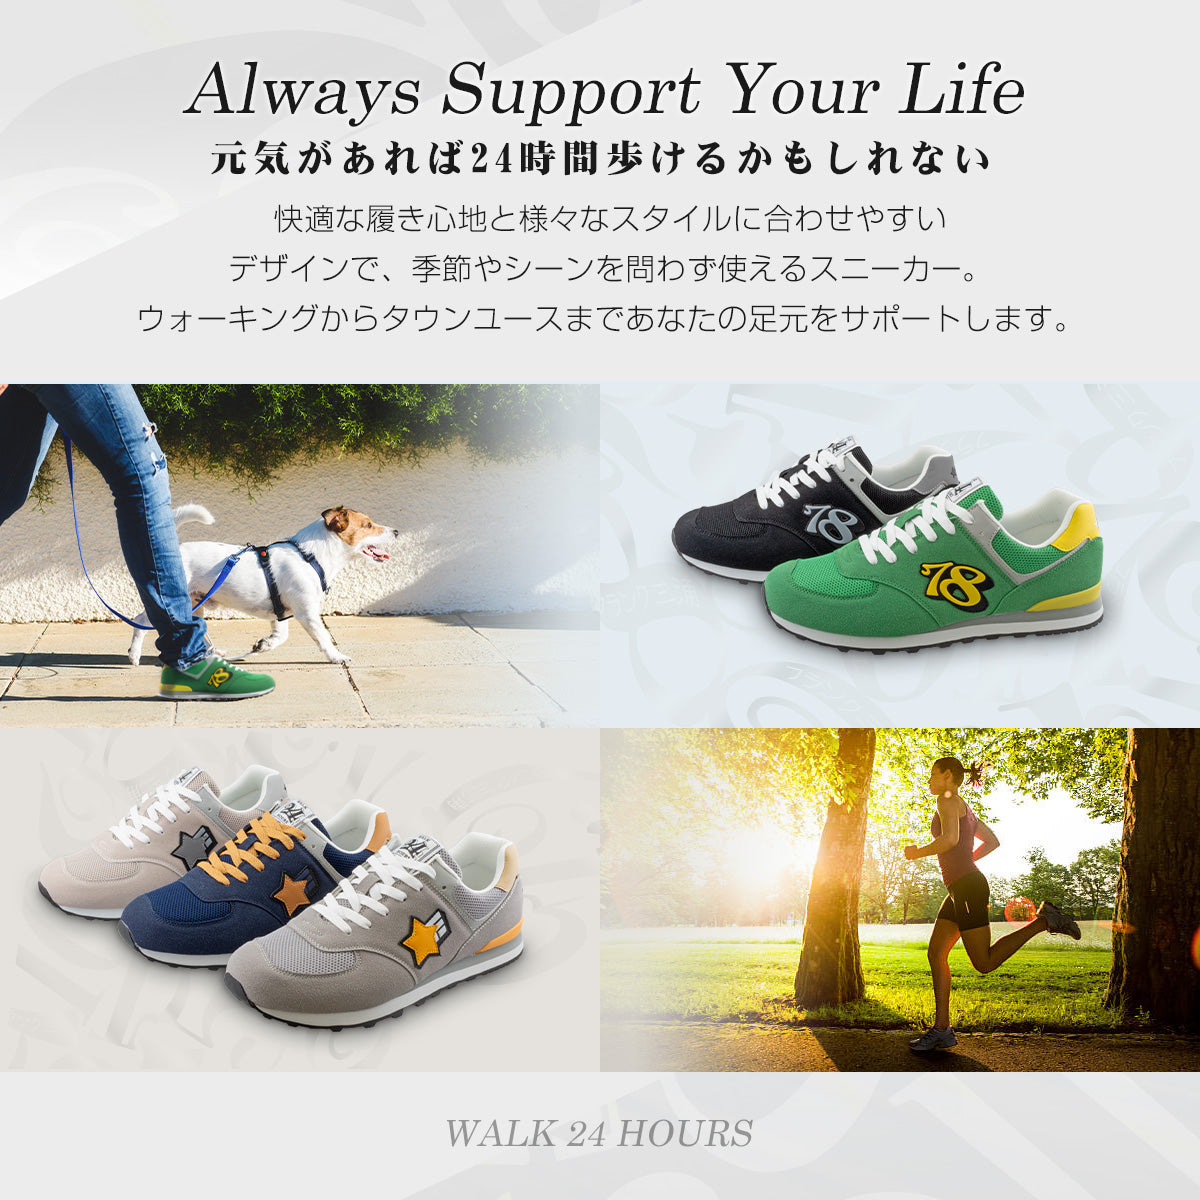 フランク三浦 スニーカー 靴 フットウェア footwear シルバー オレンジ FM30-SVOR